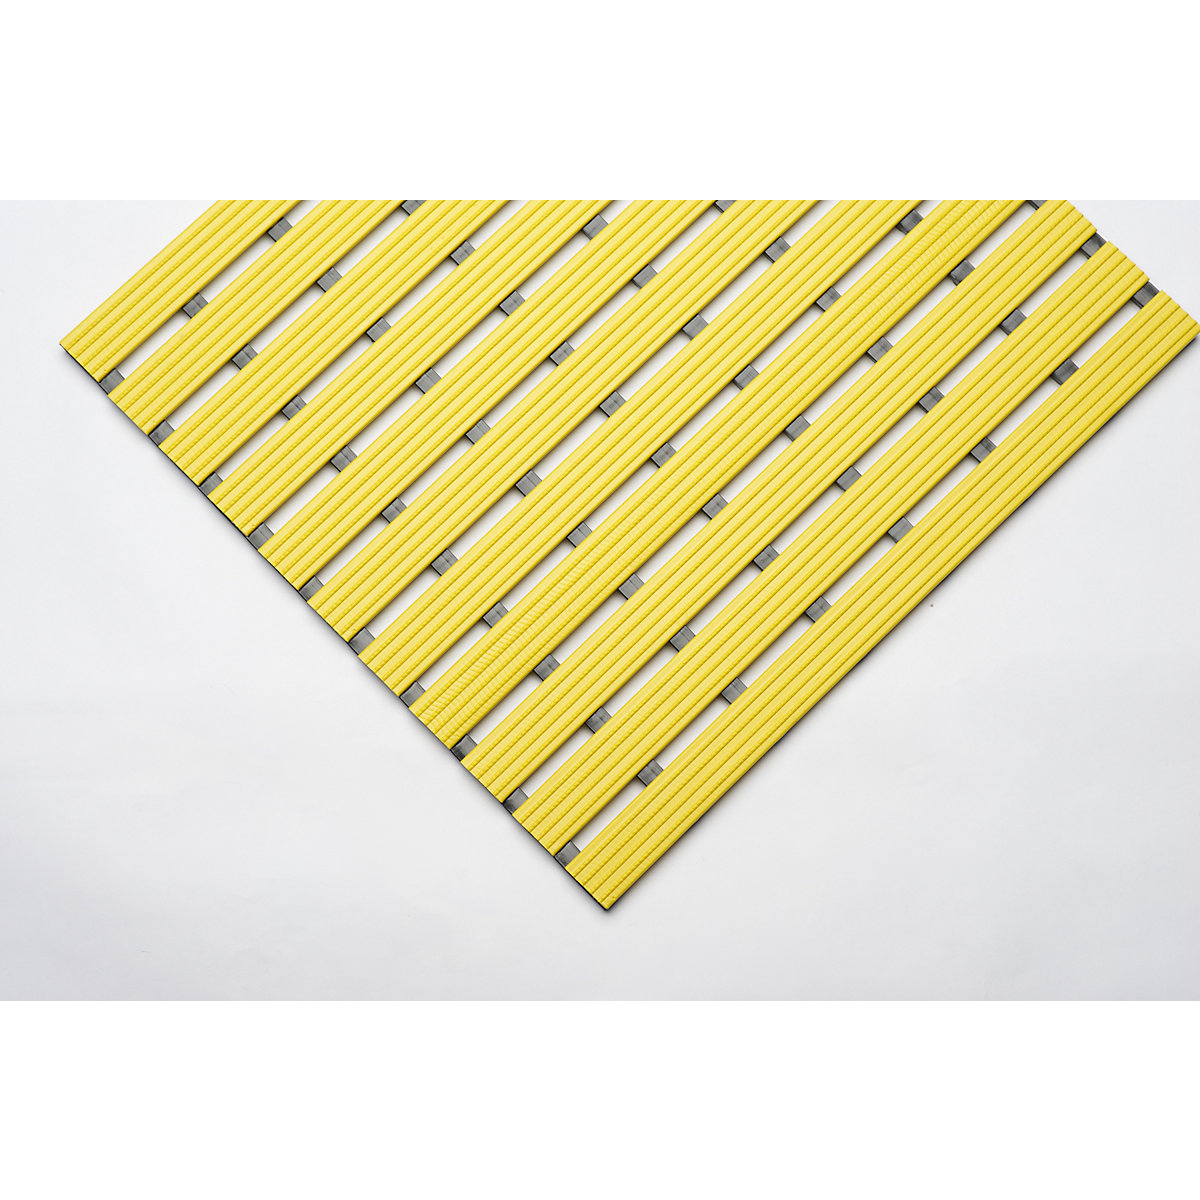 PVC-Profilmatte, pro lfd. m, Lauffläche aus Hart-PVC, rutschsicher, Breite 600 mm, gelb-5